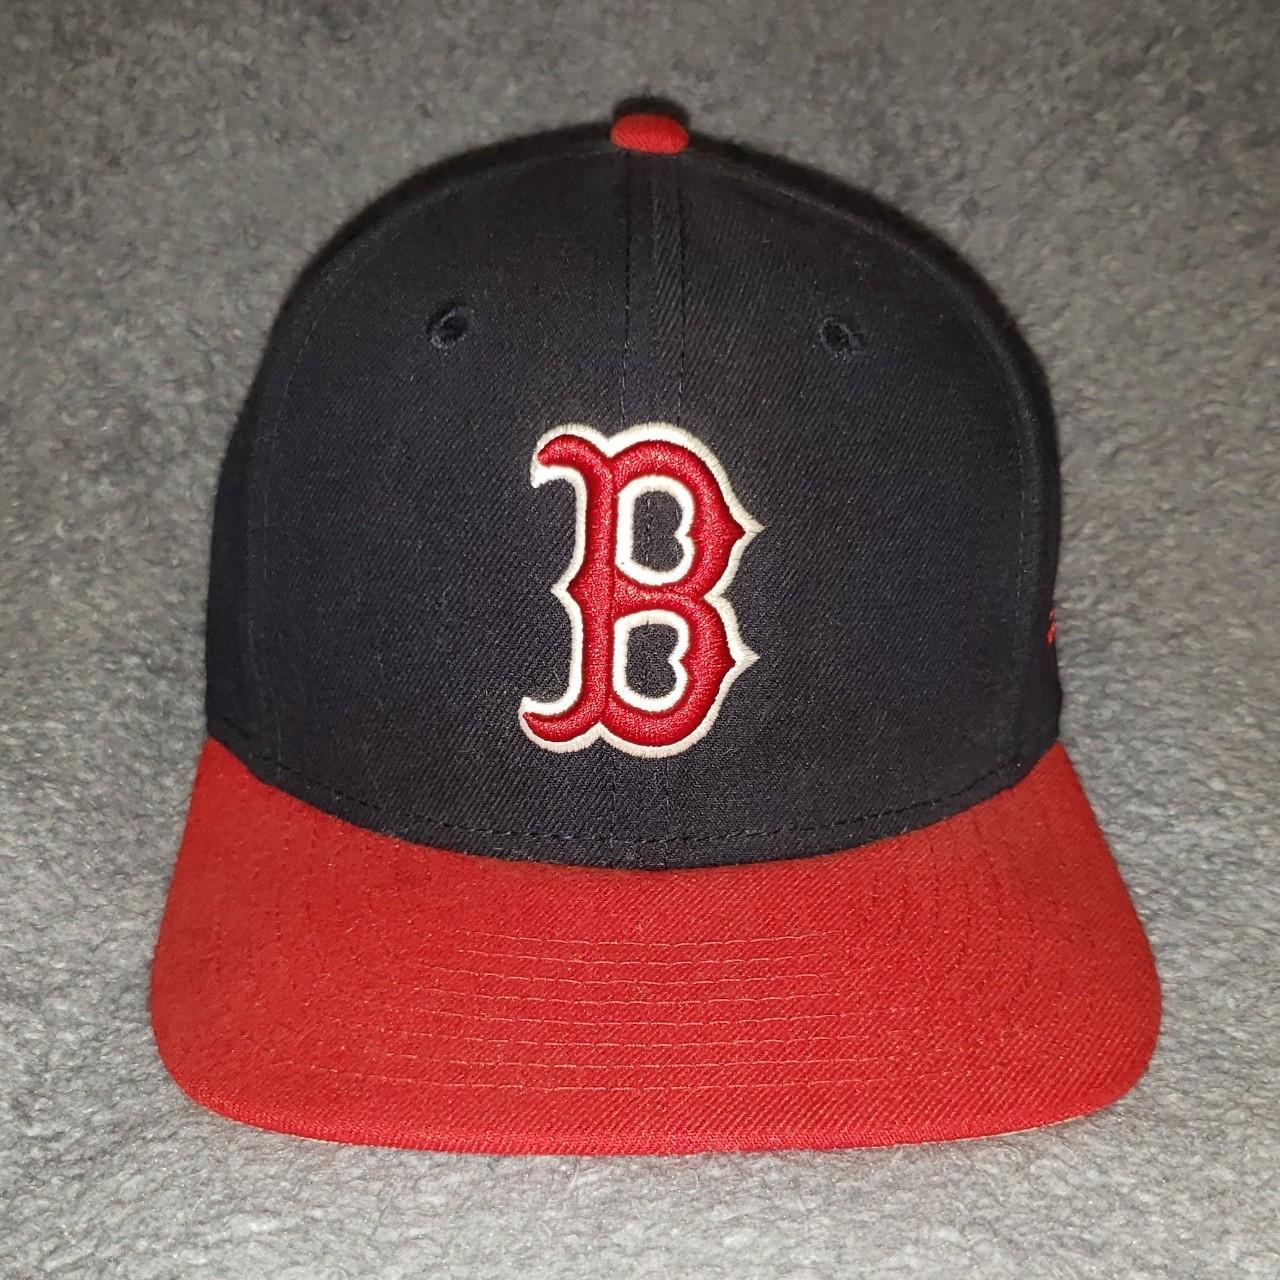 9FIFTY New Era Boston Red Sox Baseball Cap Logo Navy